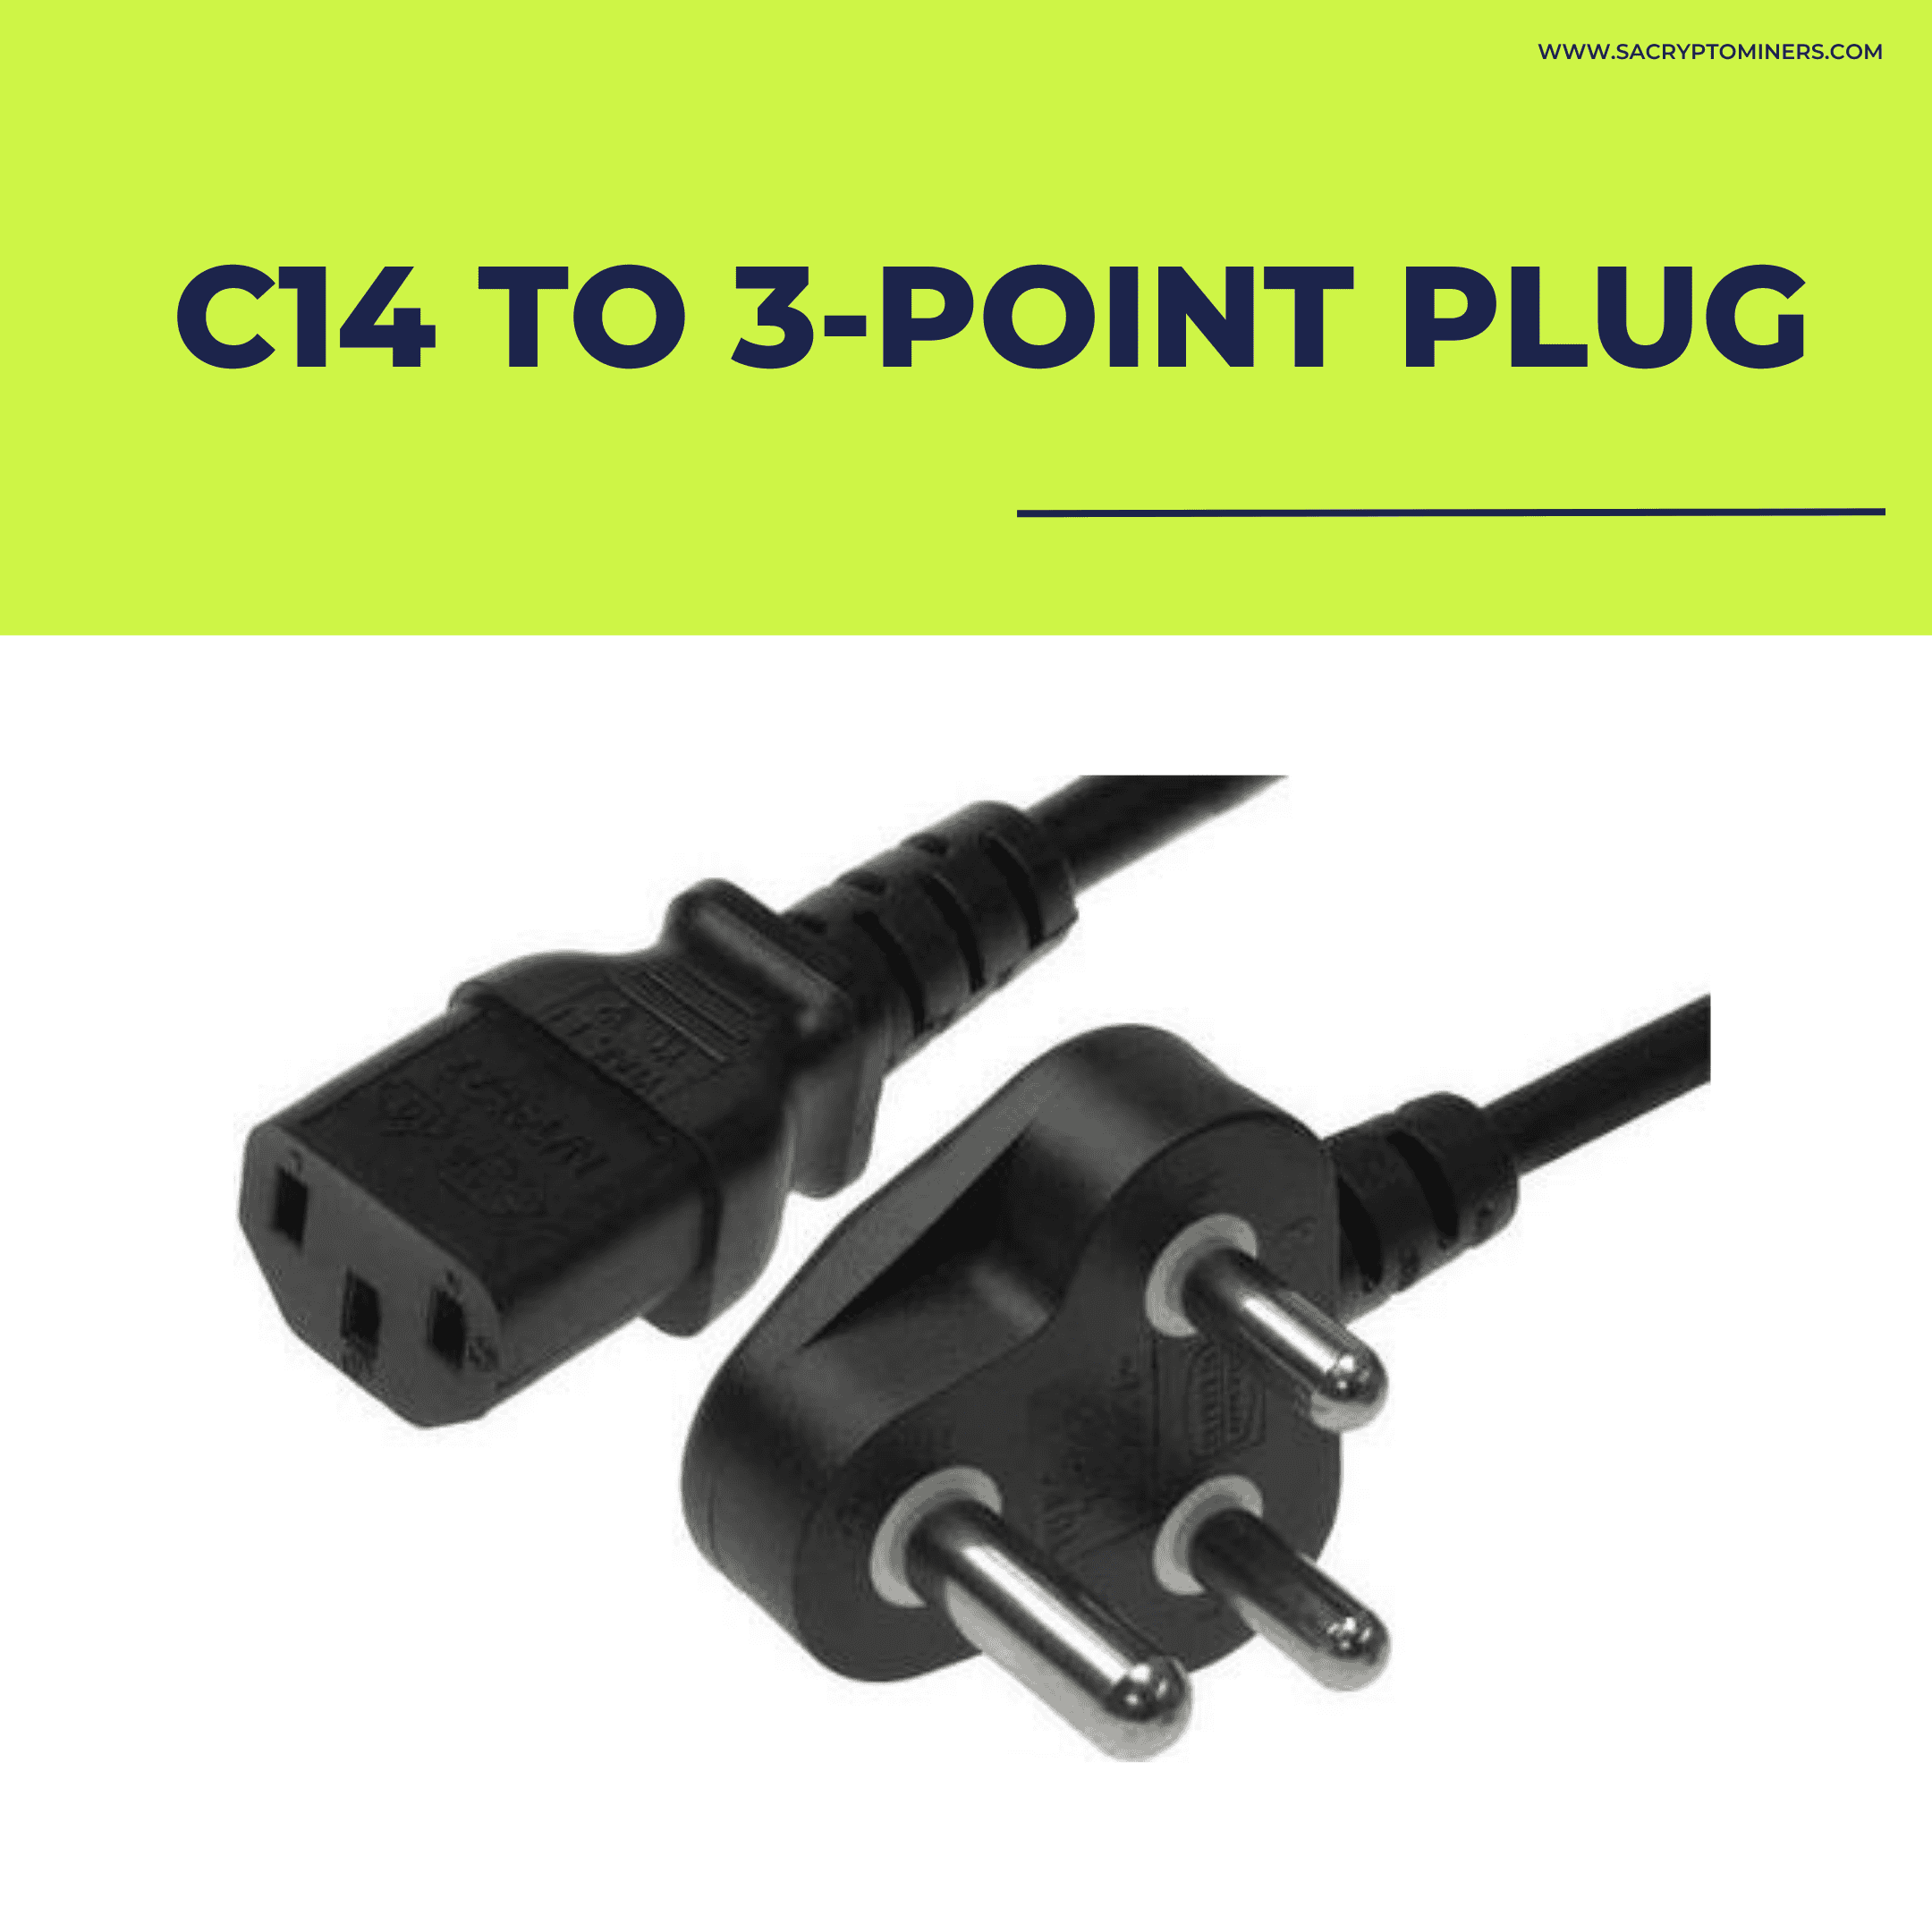 C14 to SA Plug